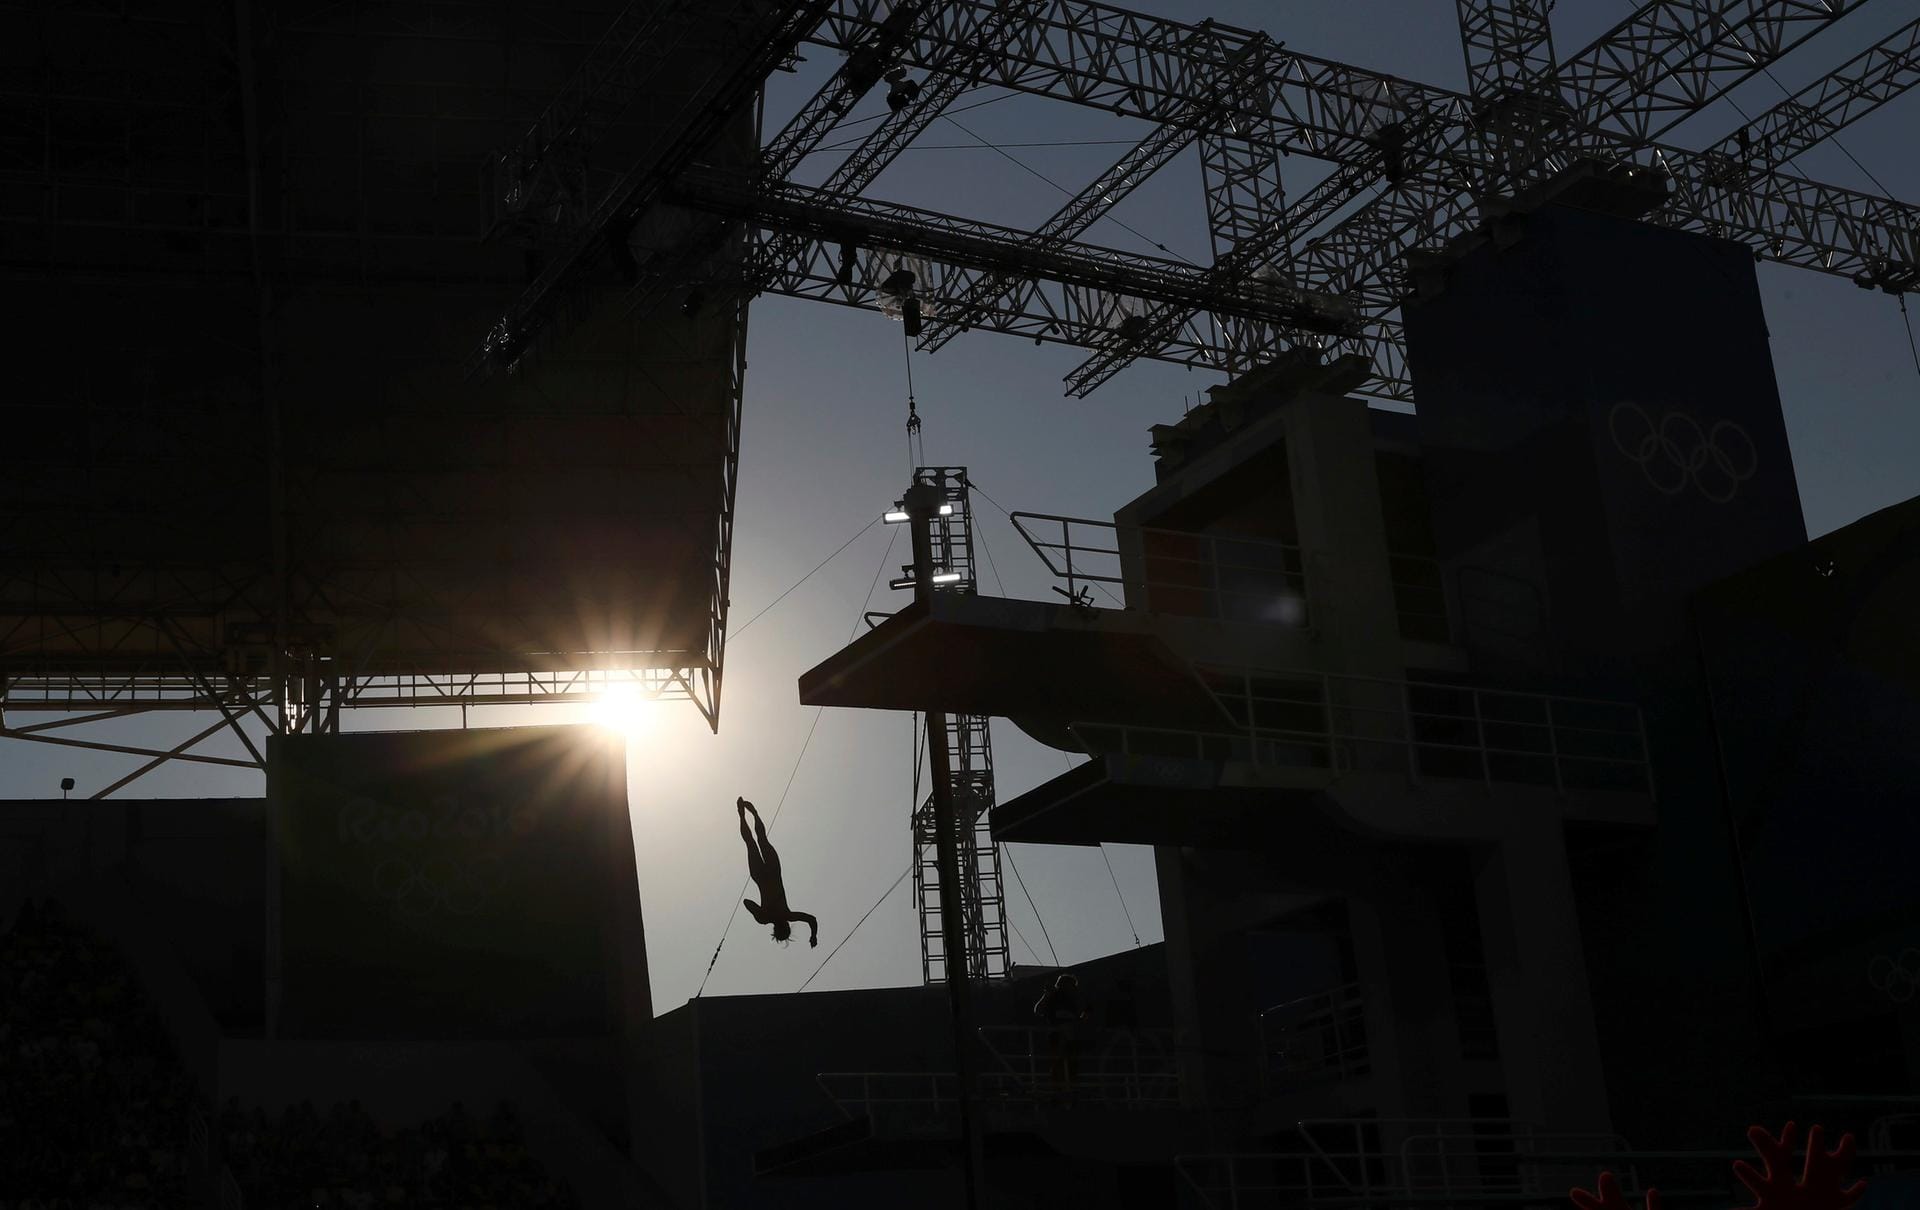 Bei einem offen konzipierten Stadion wie dem Maria Lenk Aquatics Centre besteht immer die Gefahr, dass die Sonne die Athleten während ihren Wettkämpfen stört. Anderseits kann sie auch solch schöne Aufnahmen ermöglichen, wie hier beim Sprung der Malaysierin Pandelela Rinong Pamg vom 10-Meter-Turm.